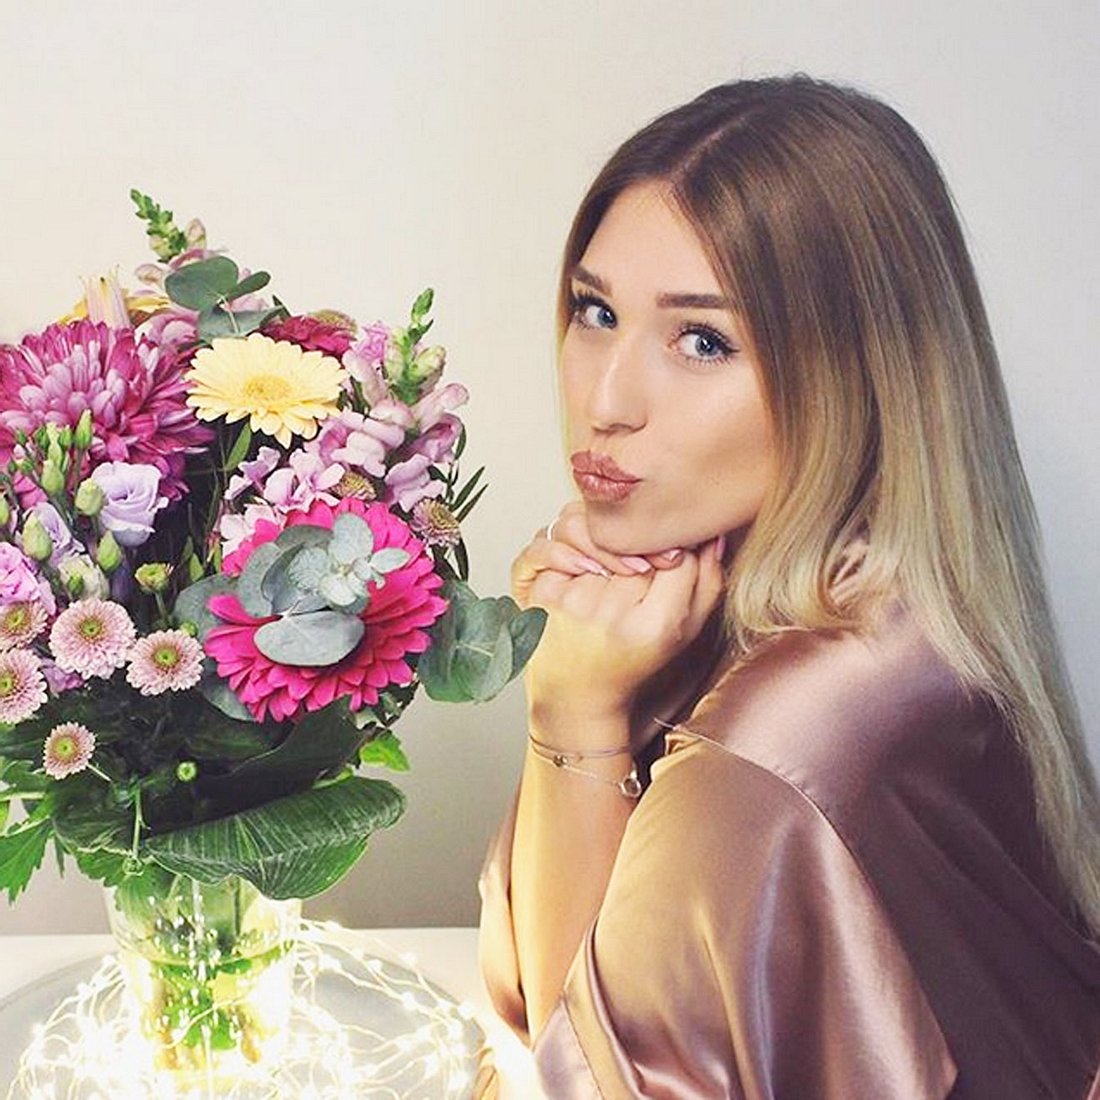 Bibis Beauty Palace hat 6,4 Millionen Abonnenten auf Instagram.